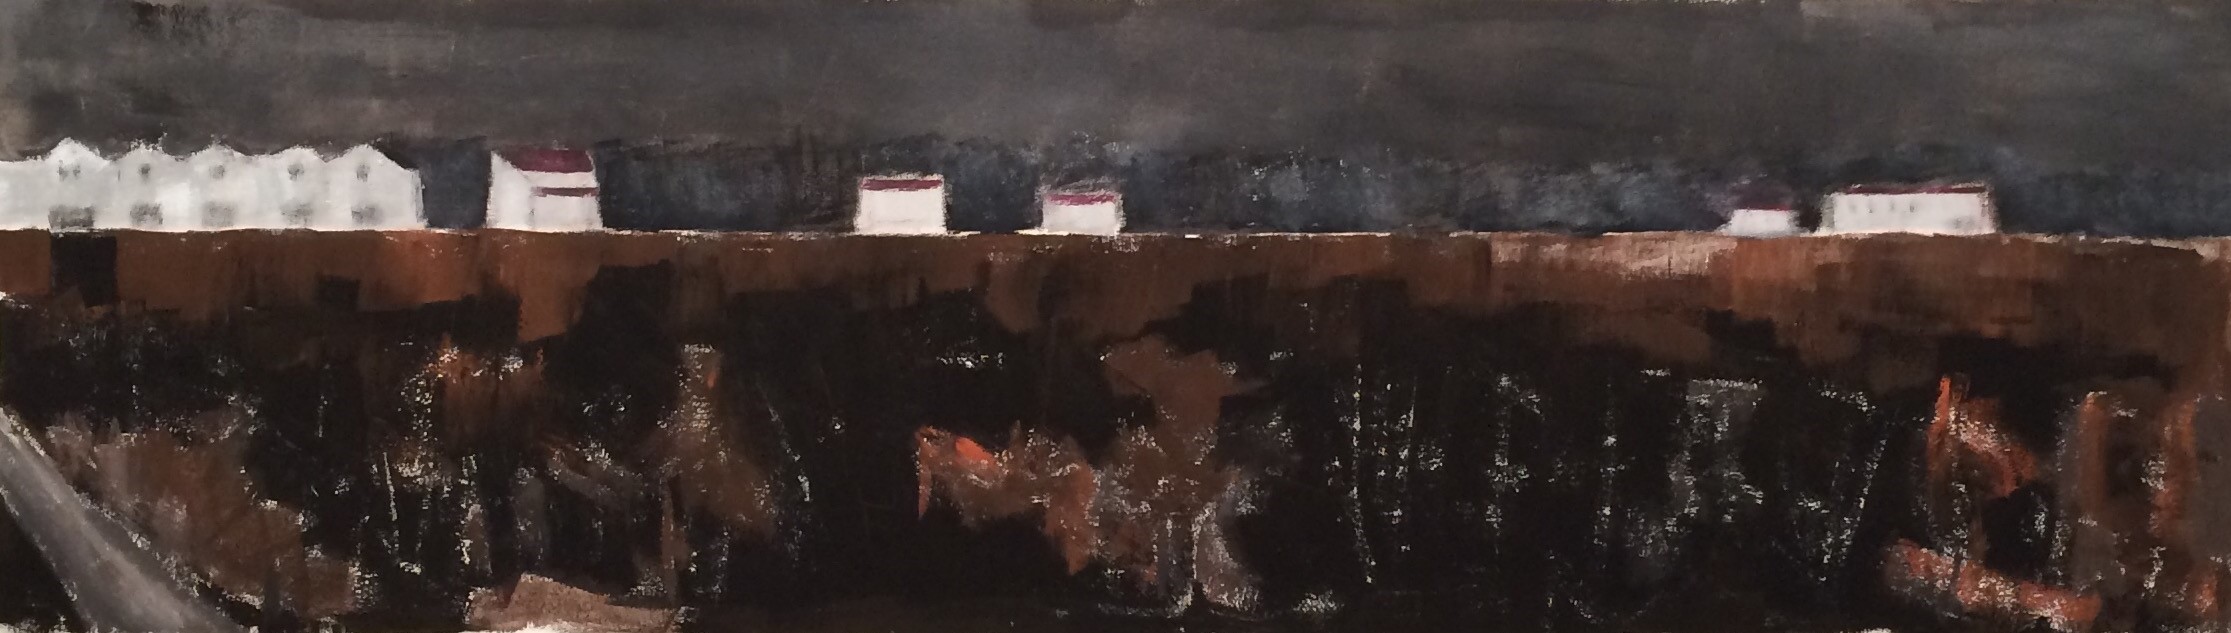 N°3166 - Vigne d'hiver à l’enclos de la Croix - Acrylique et pigments sur toile - 38 x 135 cm - 24 novembre 2016